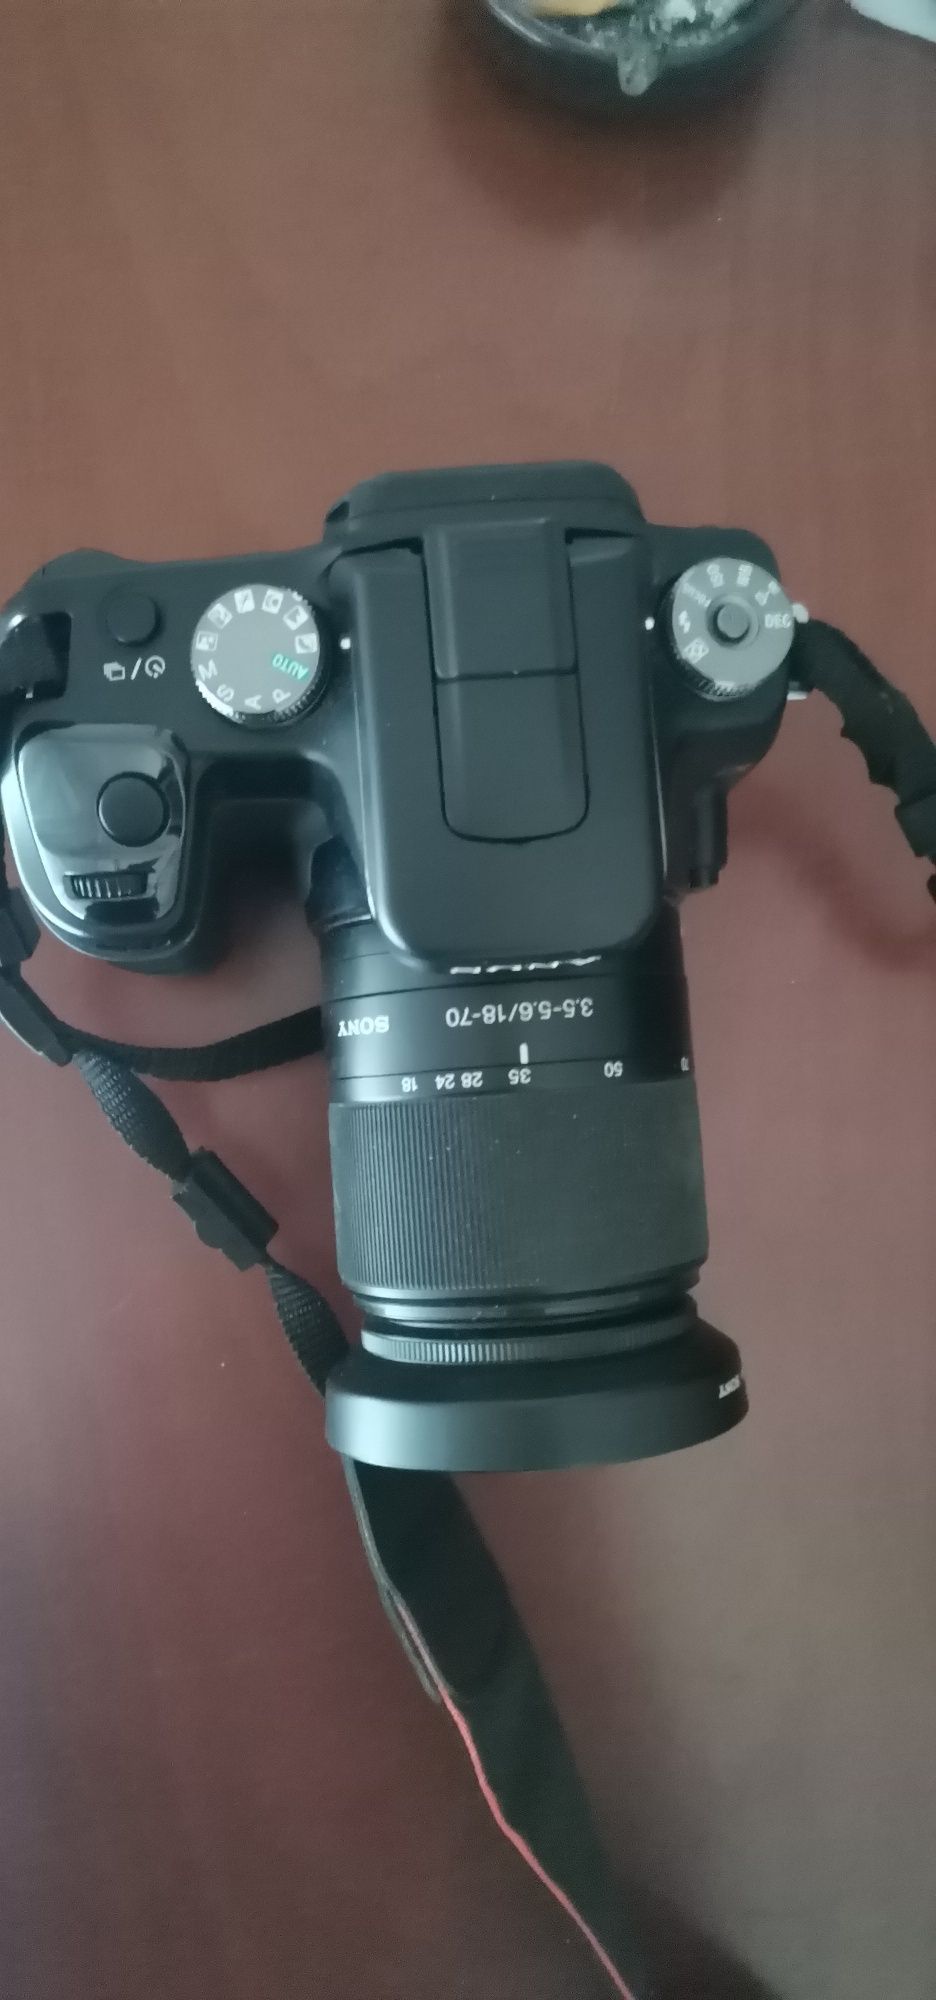 Máquina fotográfica Sony n50